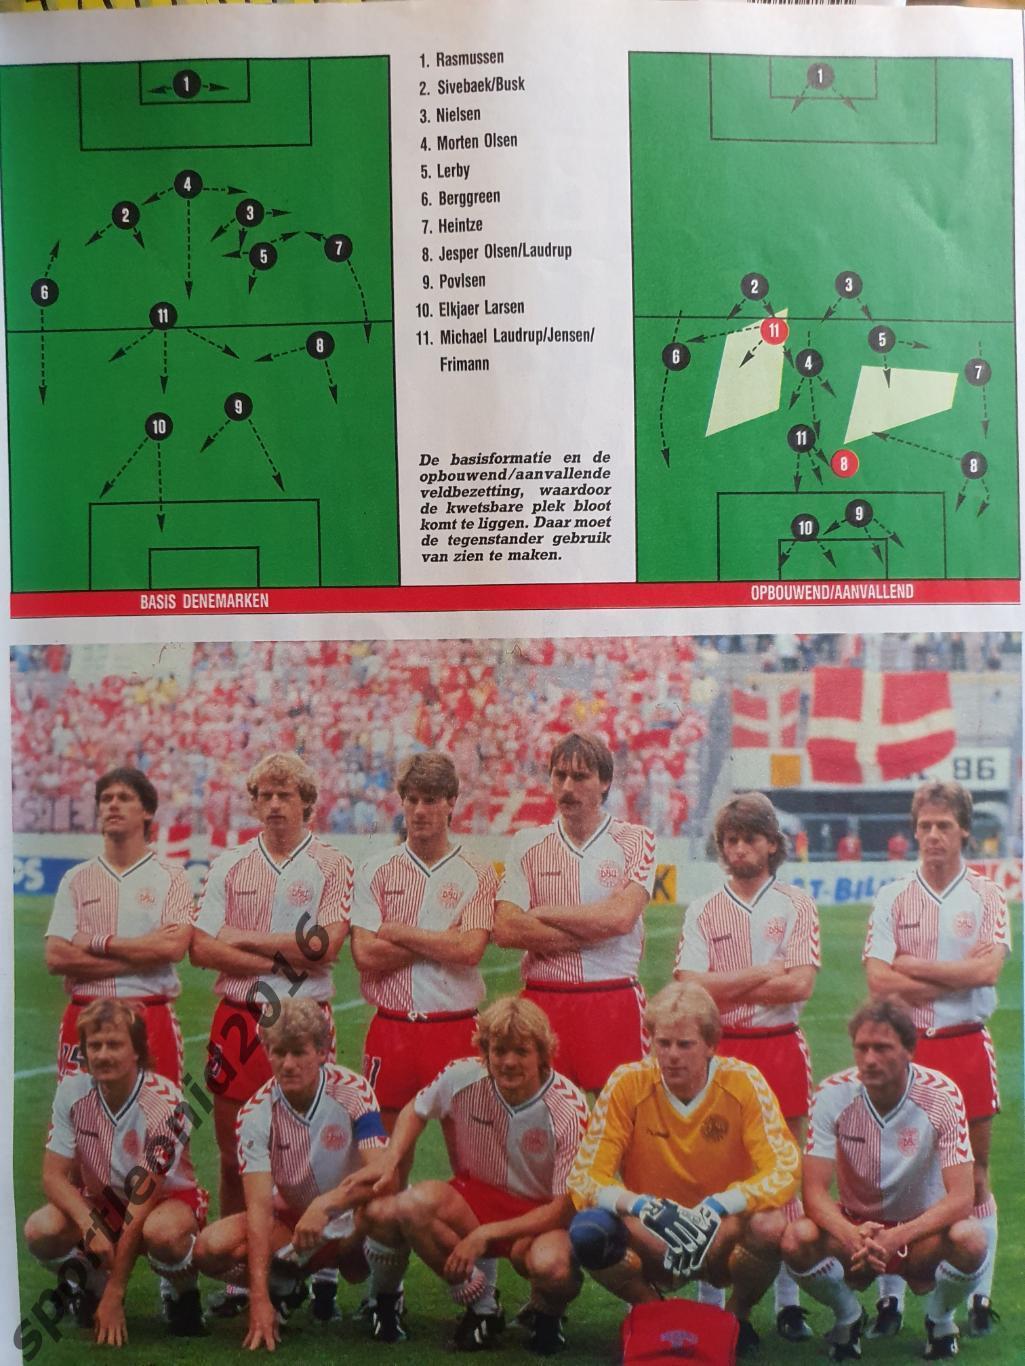 Voetbal International 1988.Годовая подписка.52 номера +4 спецвыпуска к Евро-88.9